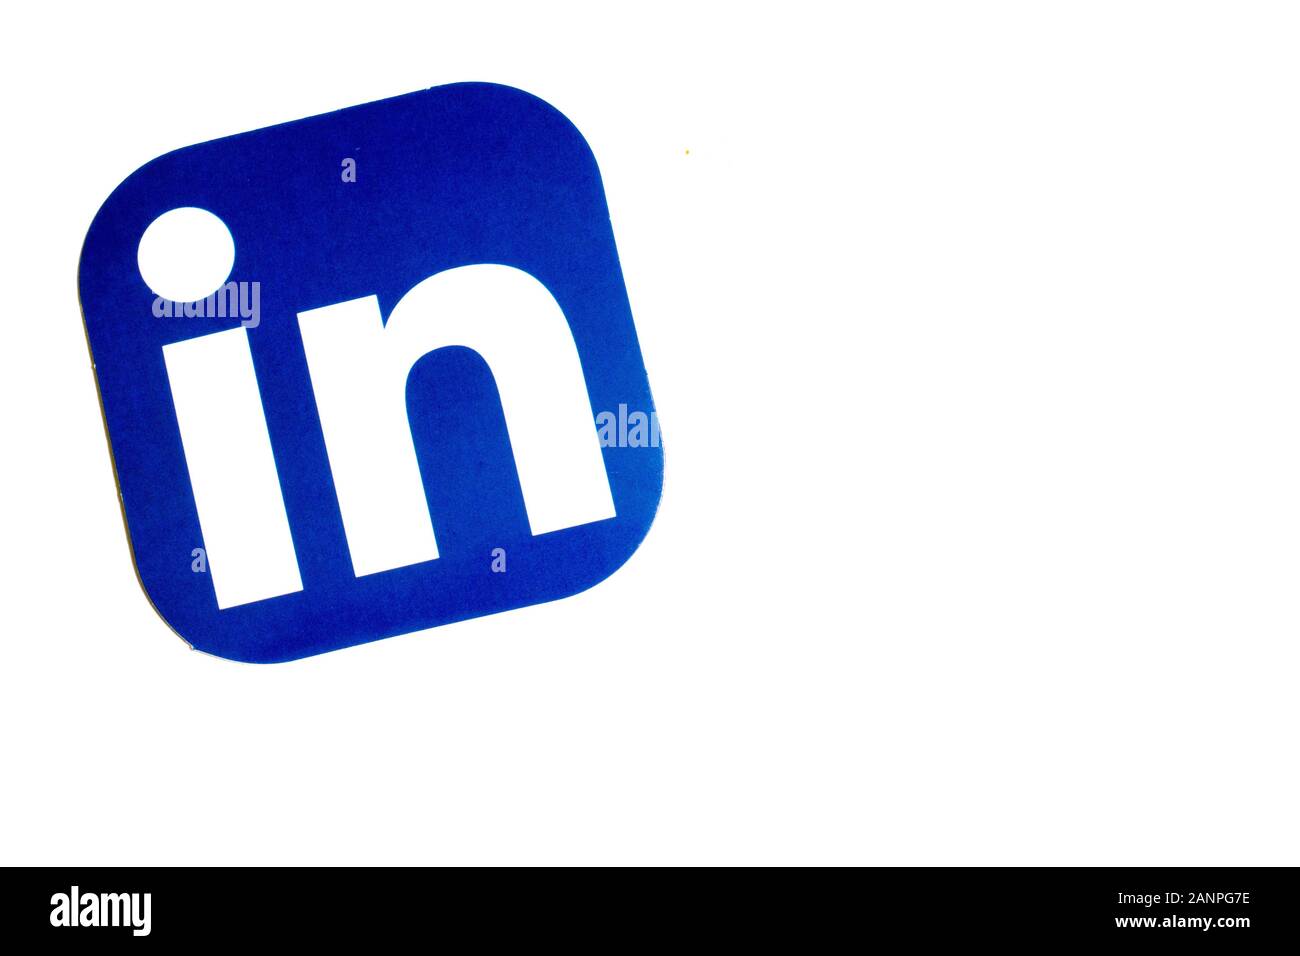 Los Angeles, Californie, États-Unis - 17 janvier 2020: Logo LinkedIn sur fond blanc avec espace de copie, éditorial illustratif Banque D'Images